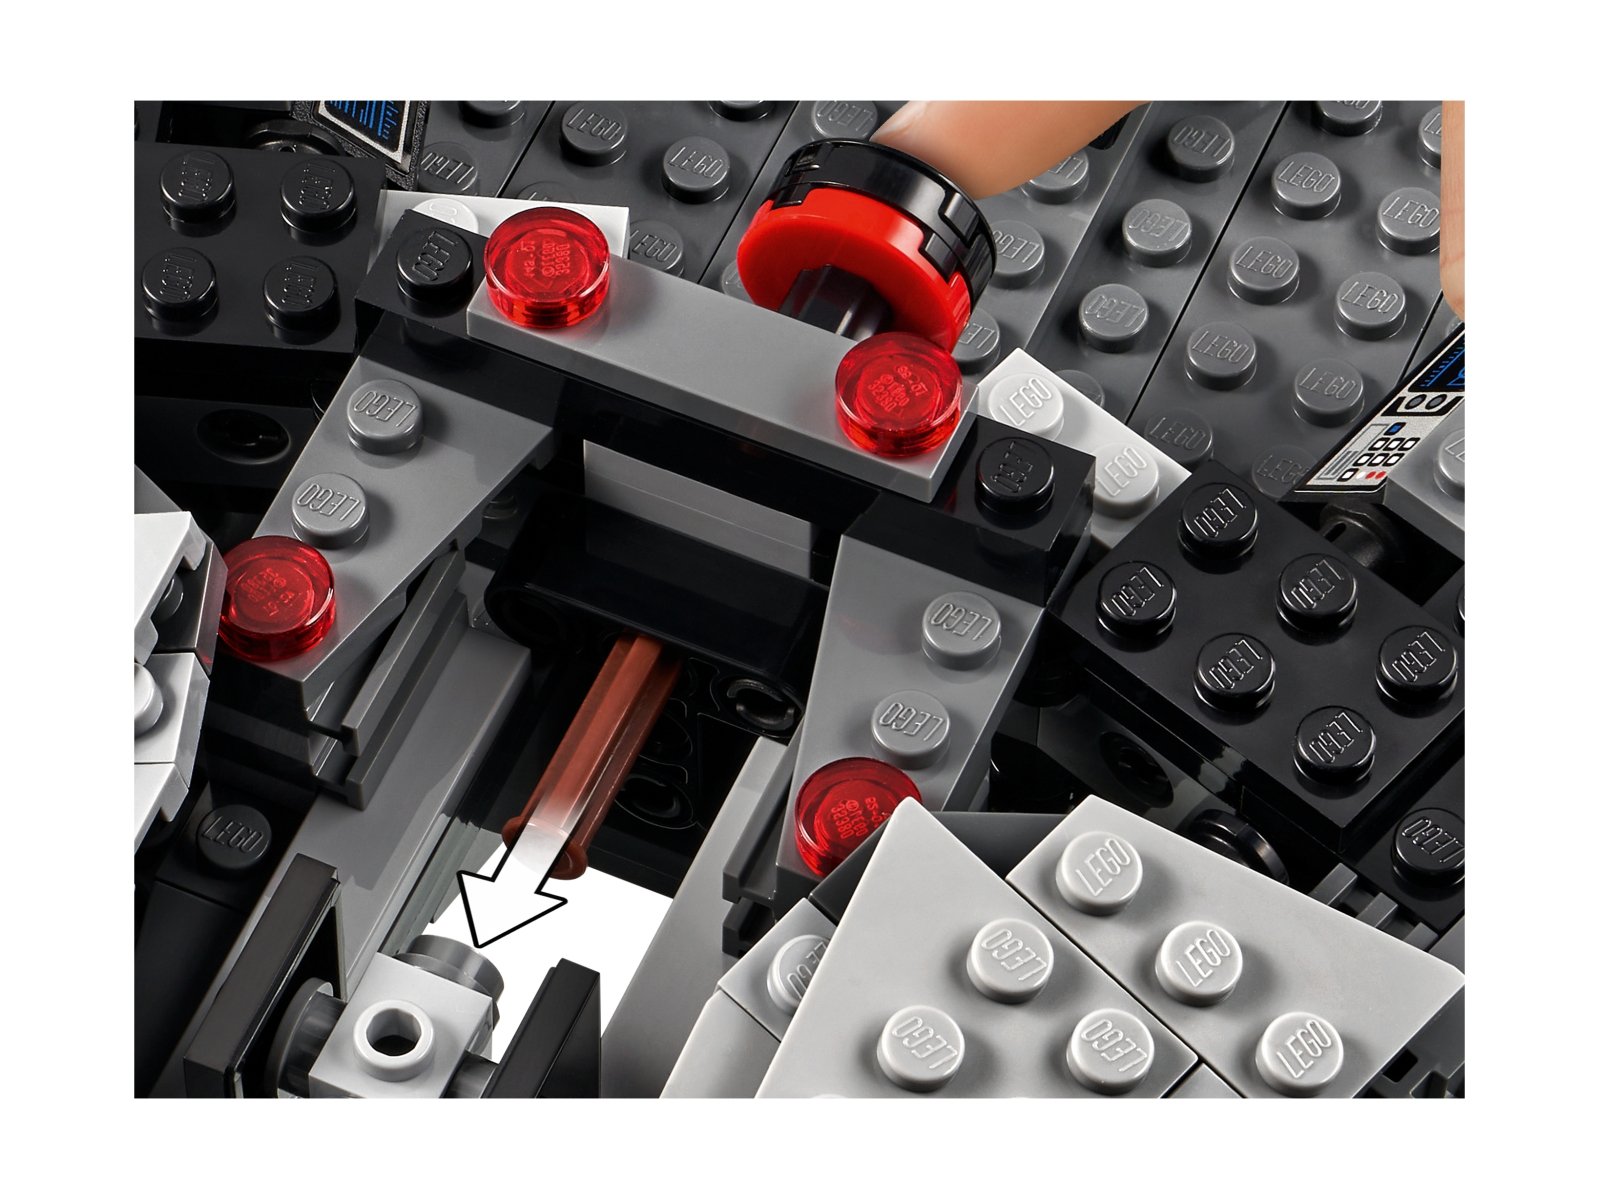 LEGO Star Wars 75315 Imperialny lekki krążownik™